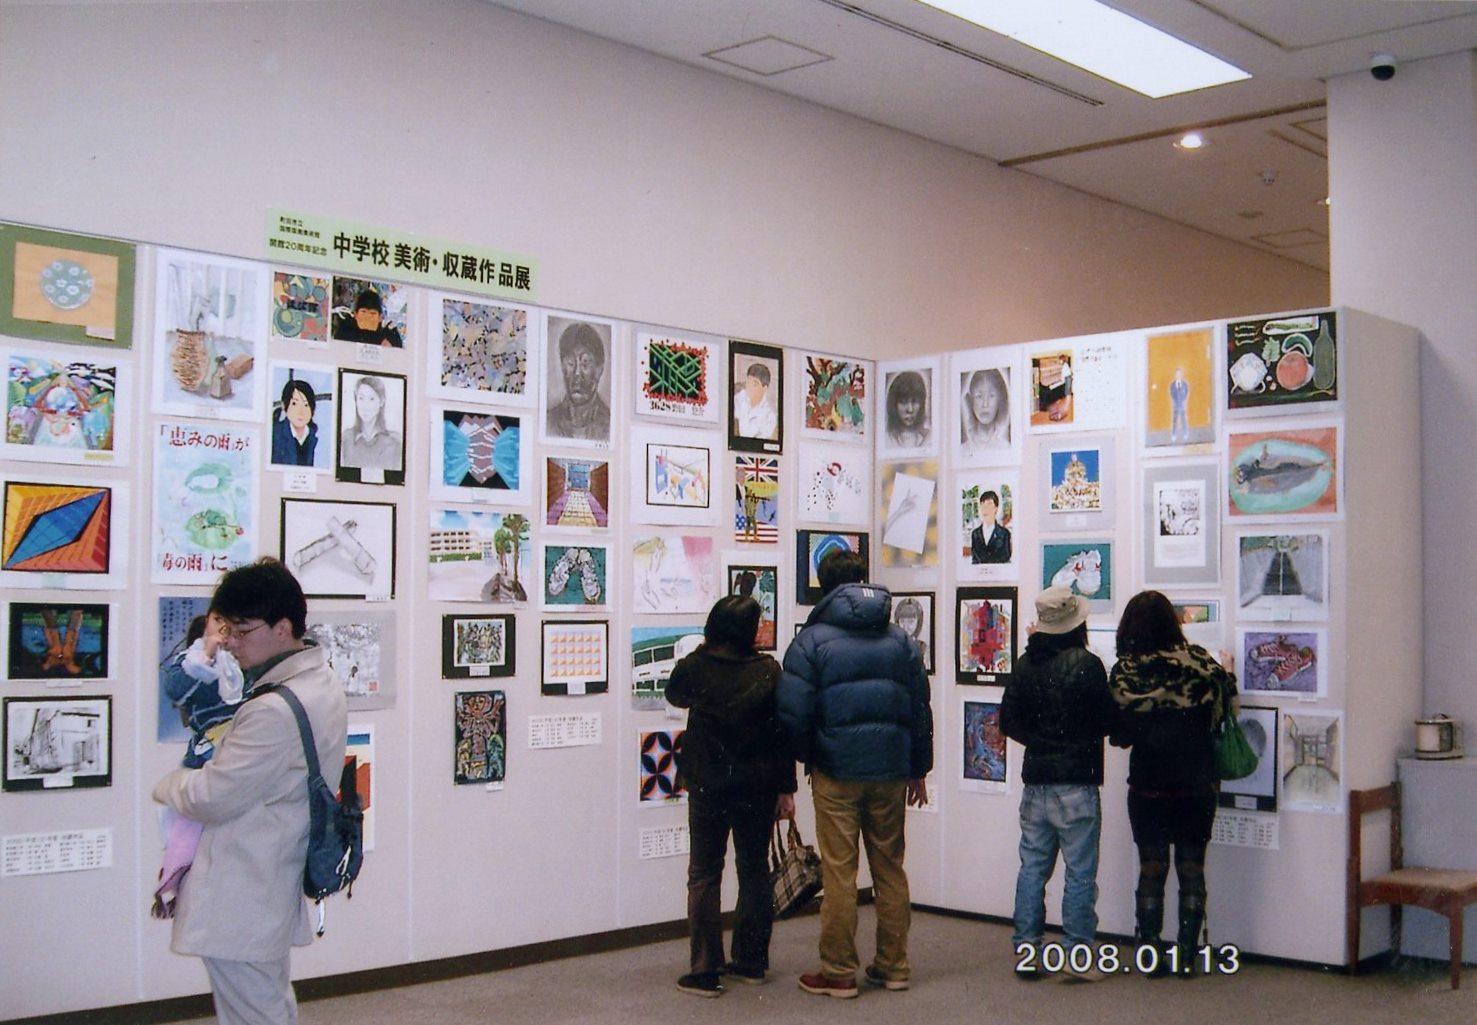 第31回町田市公立小中学校作品展　関連展示
町田市立国際版画美術館 中学校美術・収蔵作品展 
